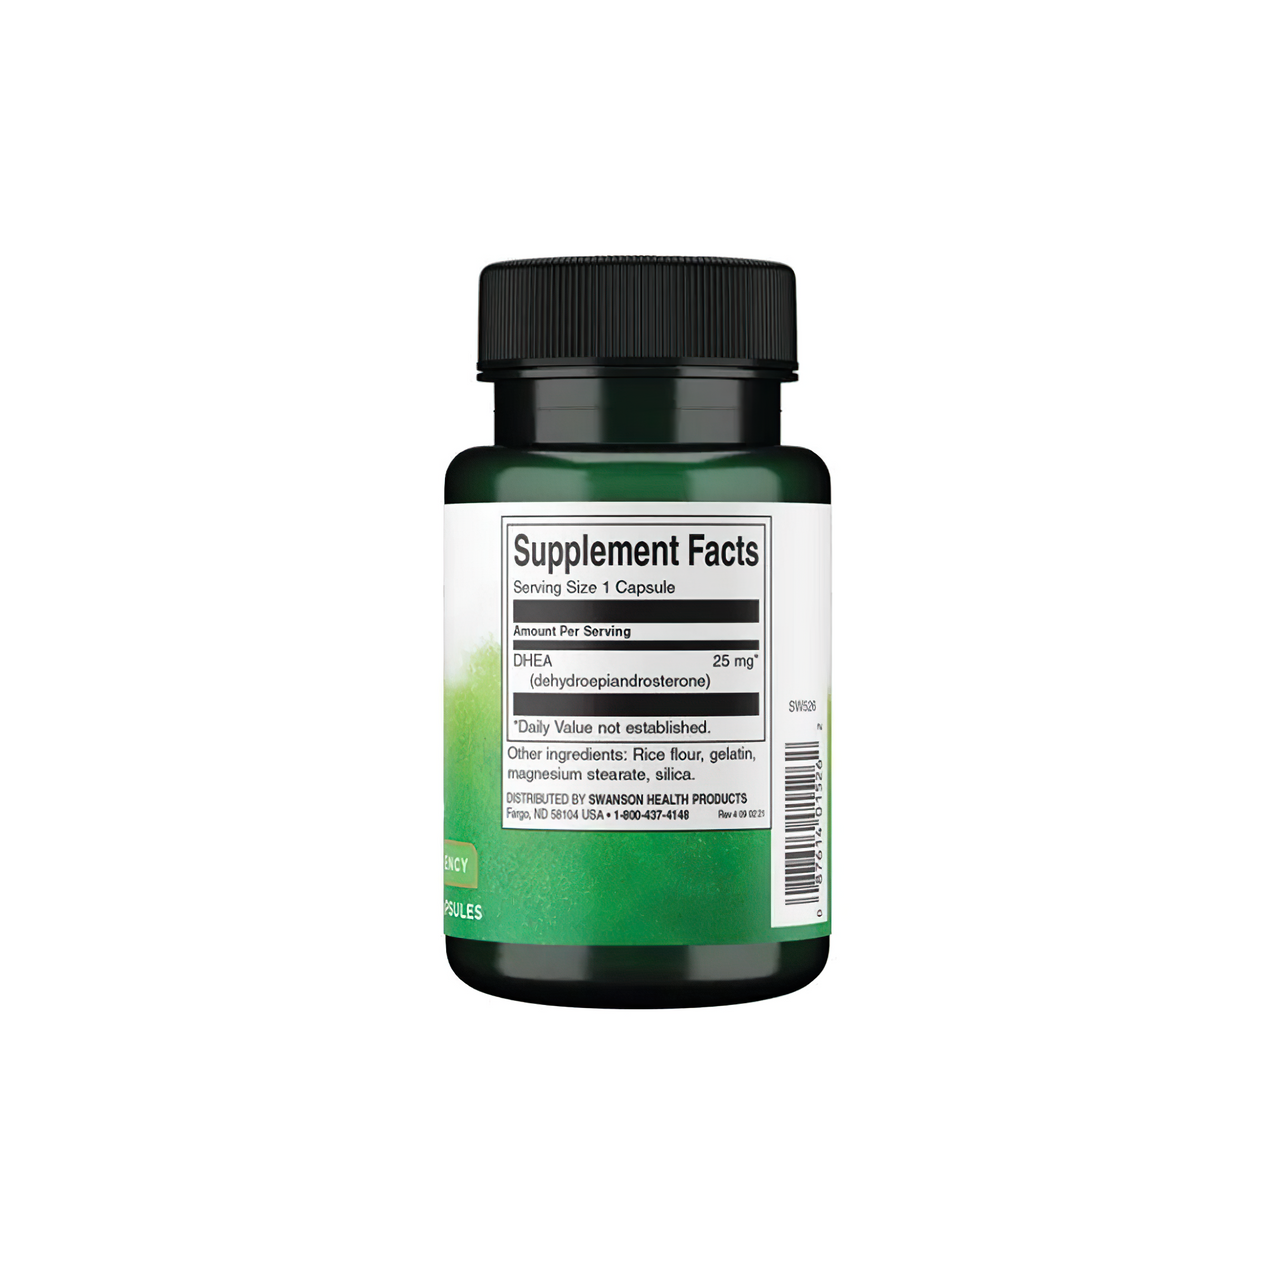 Eine Flasche Swanson DHEA - High Potency - 25 mg 120 Kapseln auf einem weißen Hintergrund.